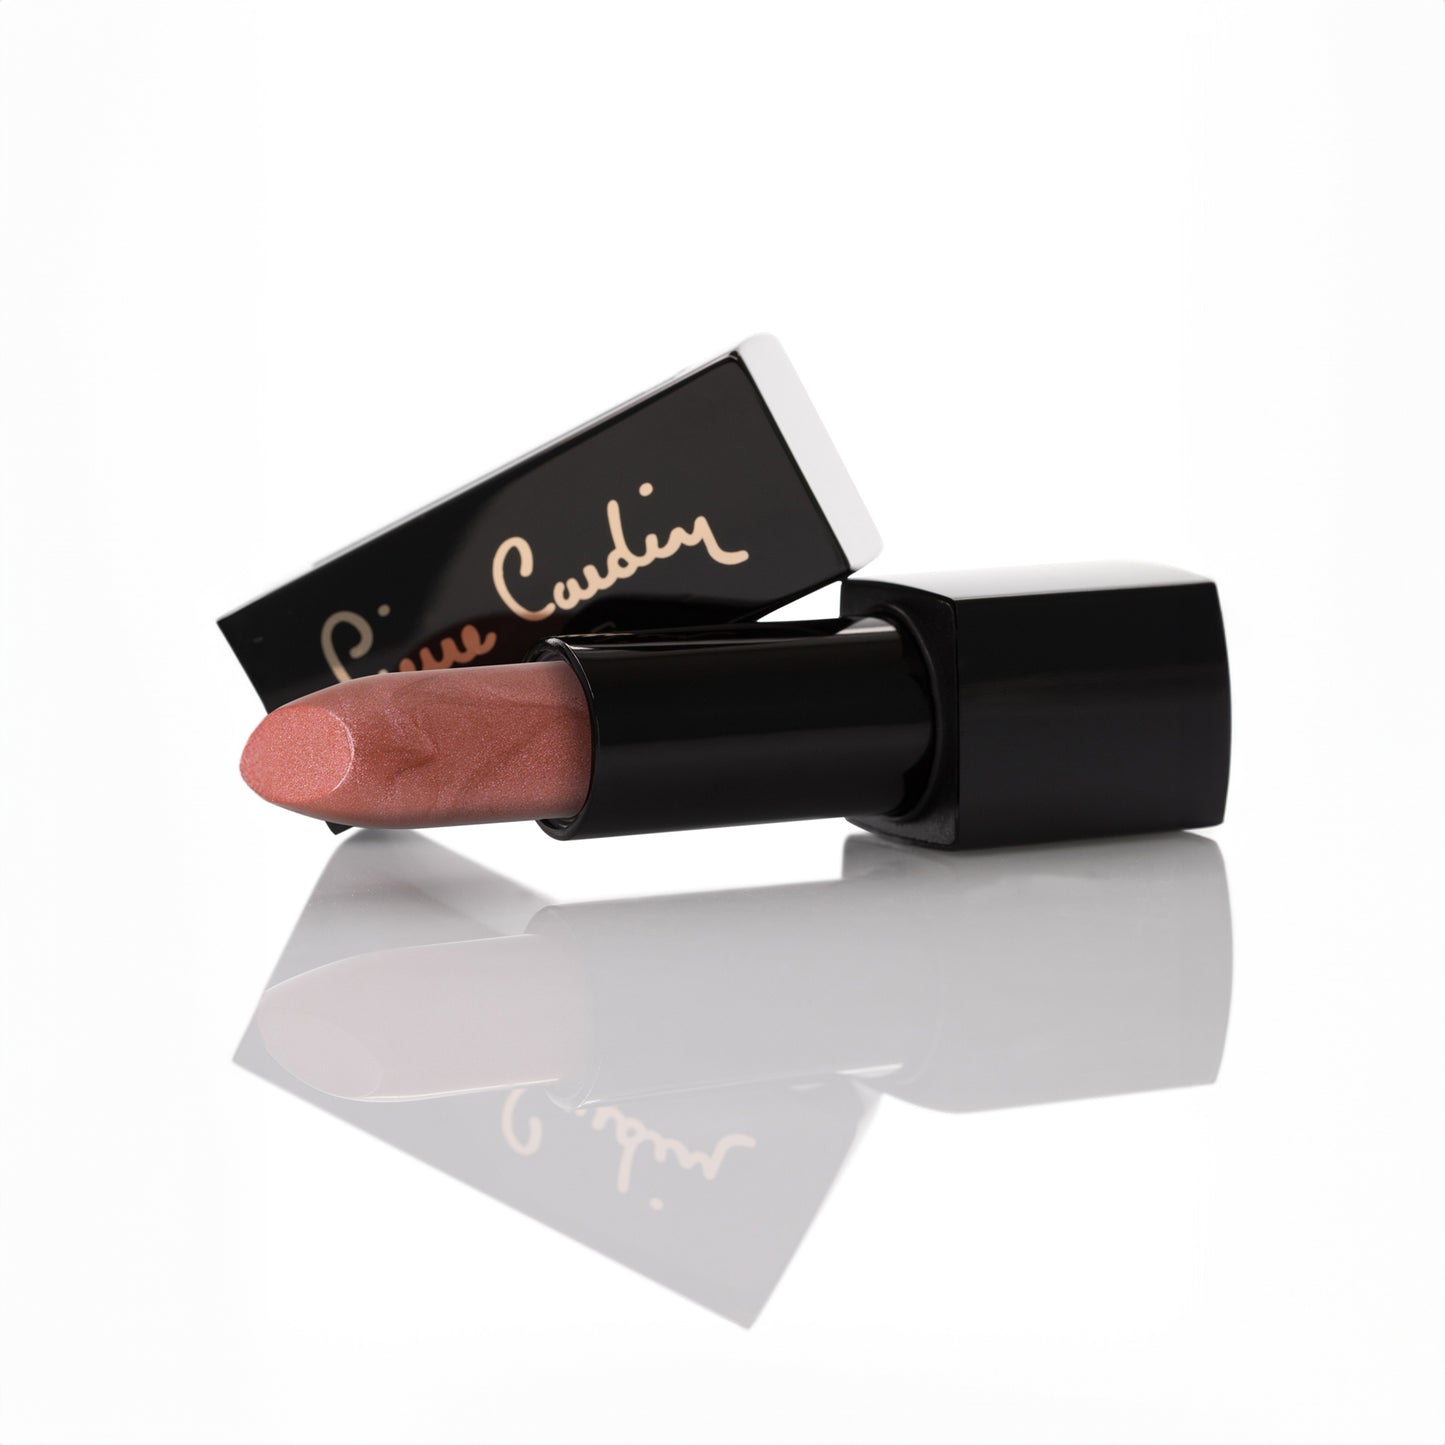 Pierre Cardin Mercury Velvet Lipstick  Nude Rose 163 - 4 gr